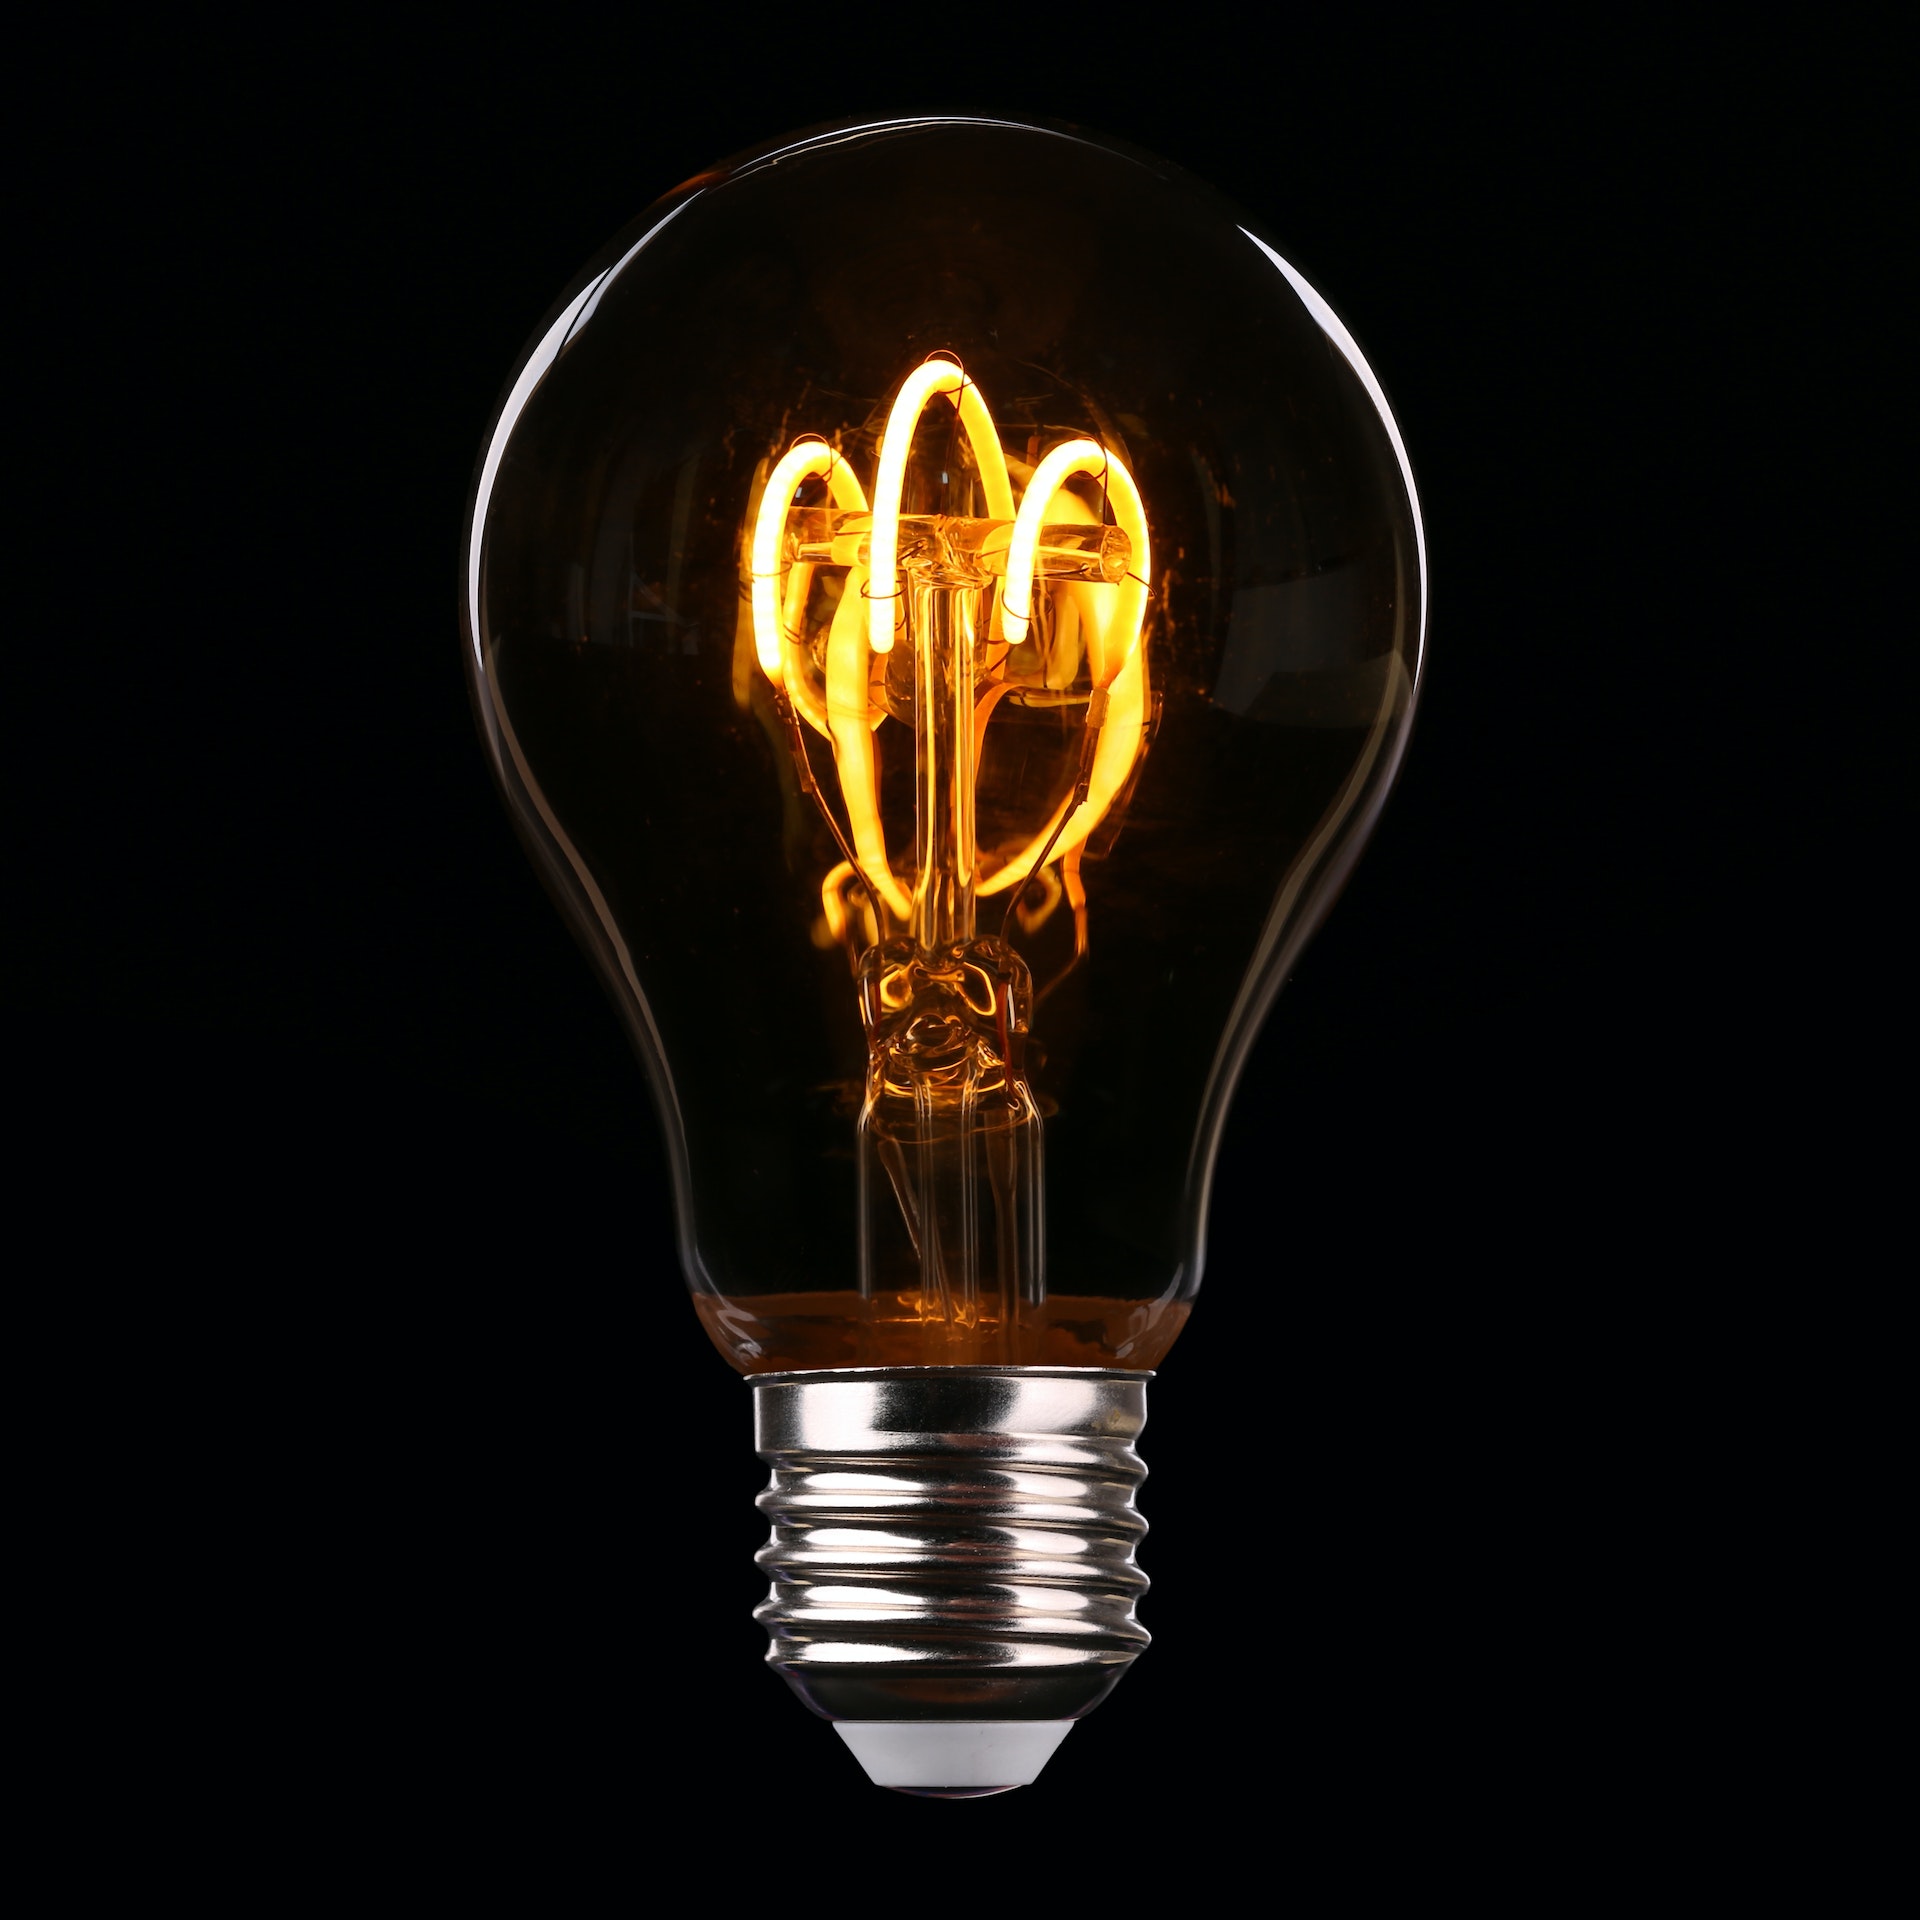 Esistono differenti tipologie di lampadine con caratteristiche specifiche e consumi differenti: a incandescenza, fluorescenti e a LED.